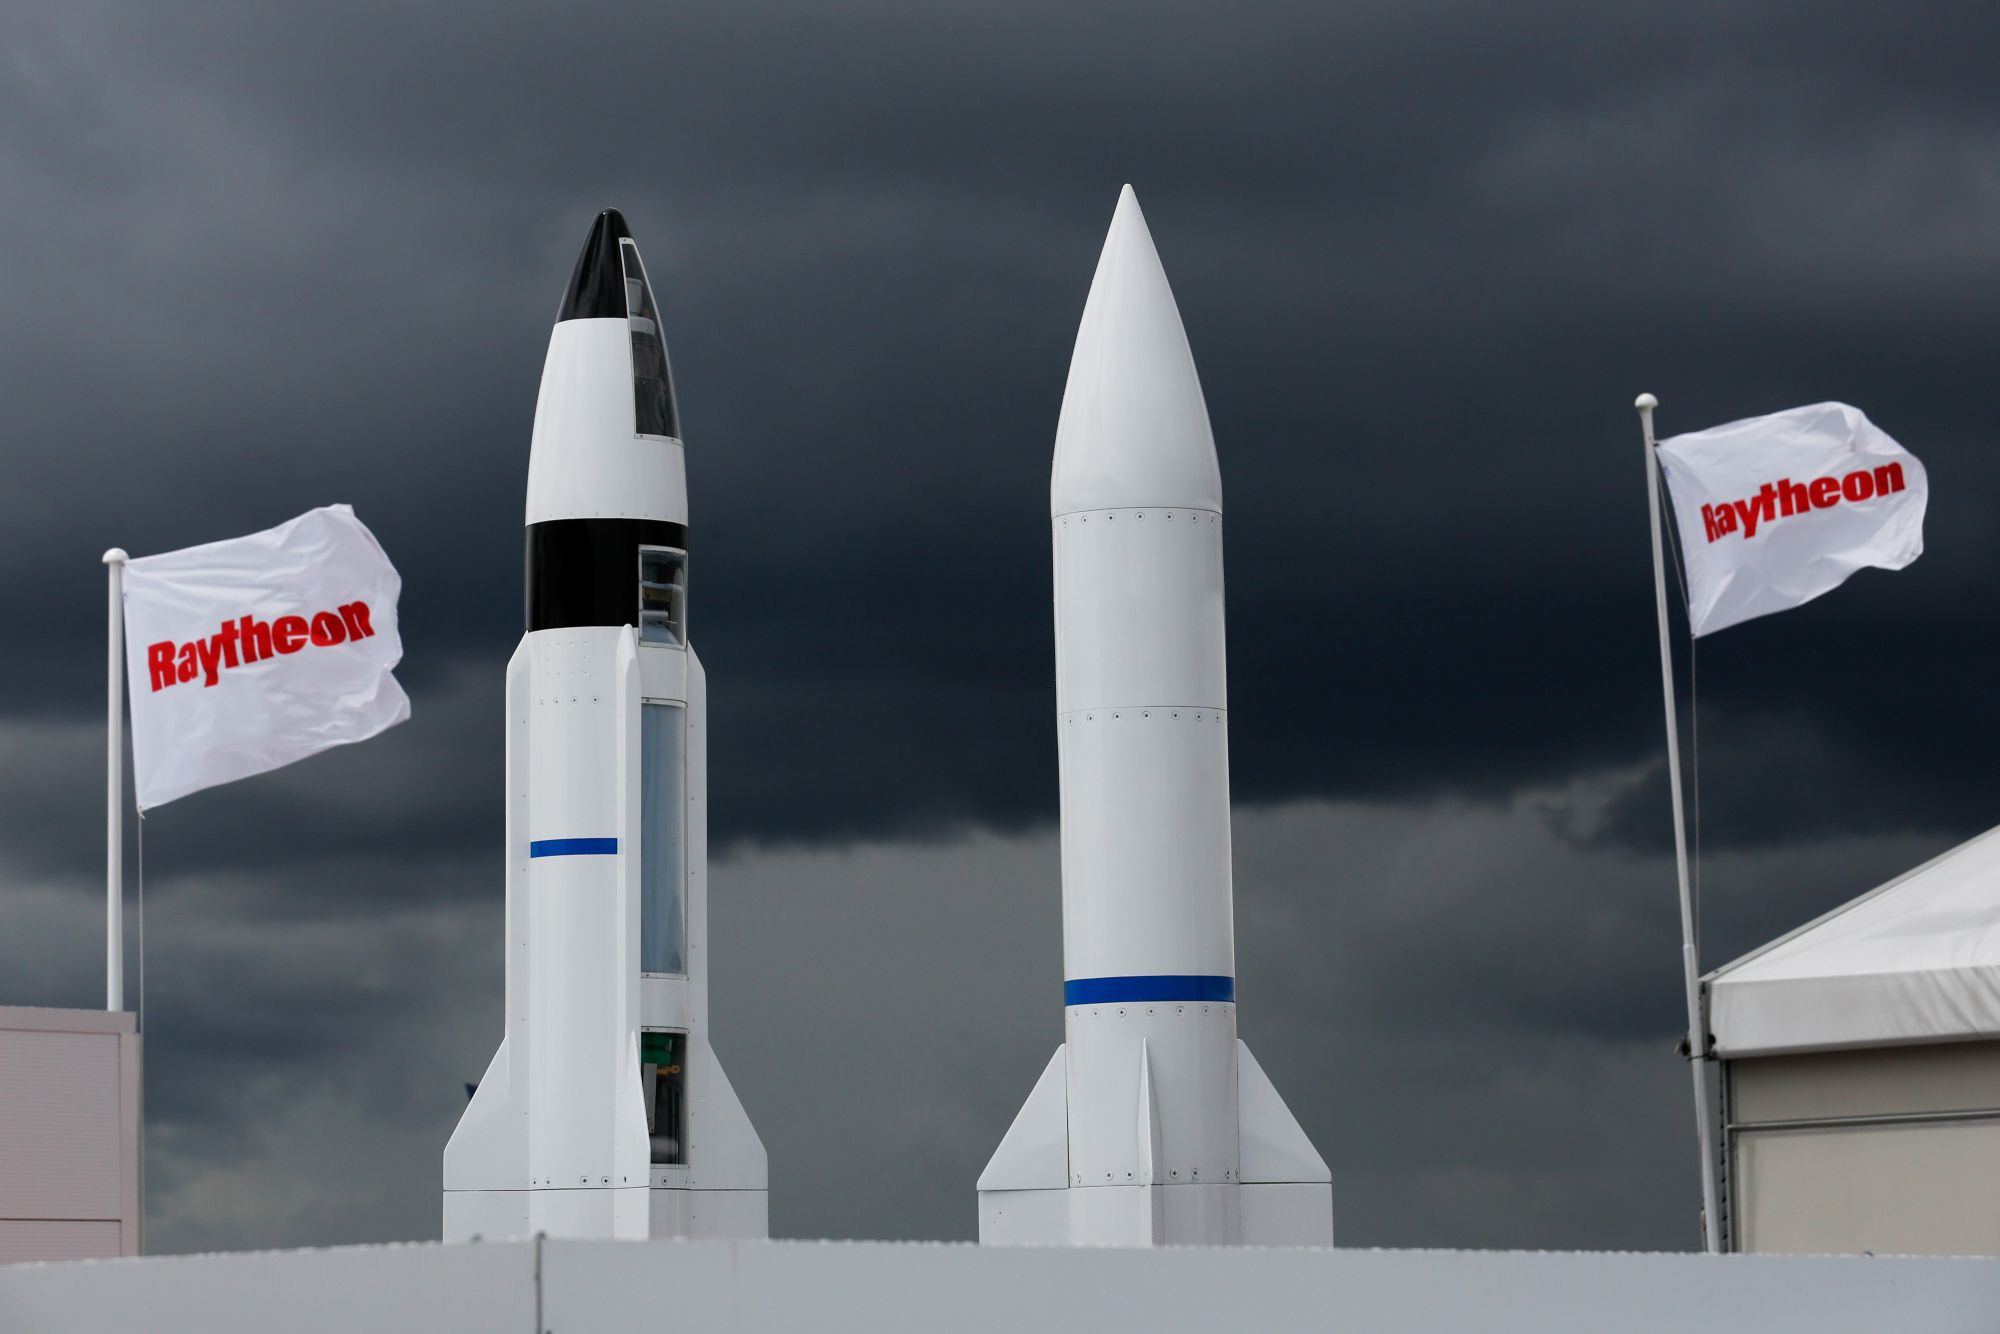 Пентагон заключил контракт на гиперзвуковые ракеты почти на миллиард долларов